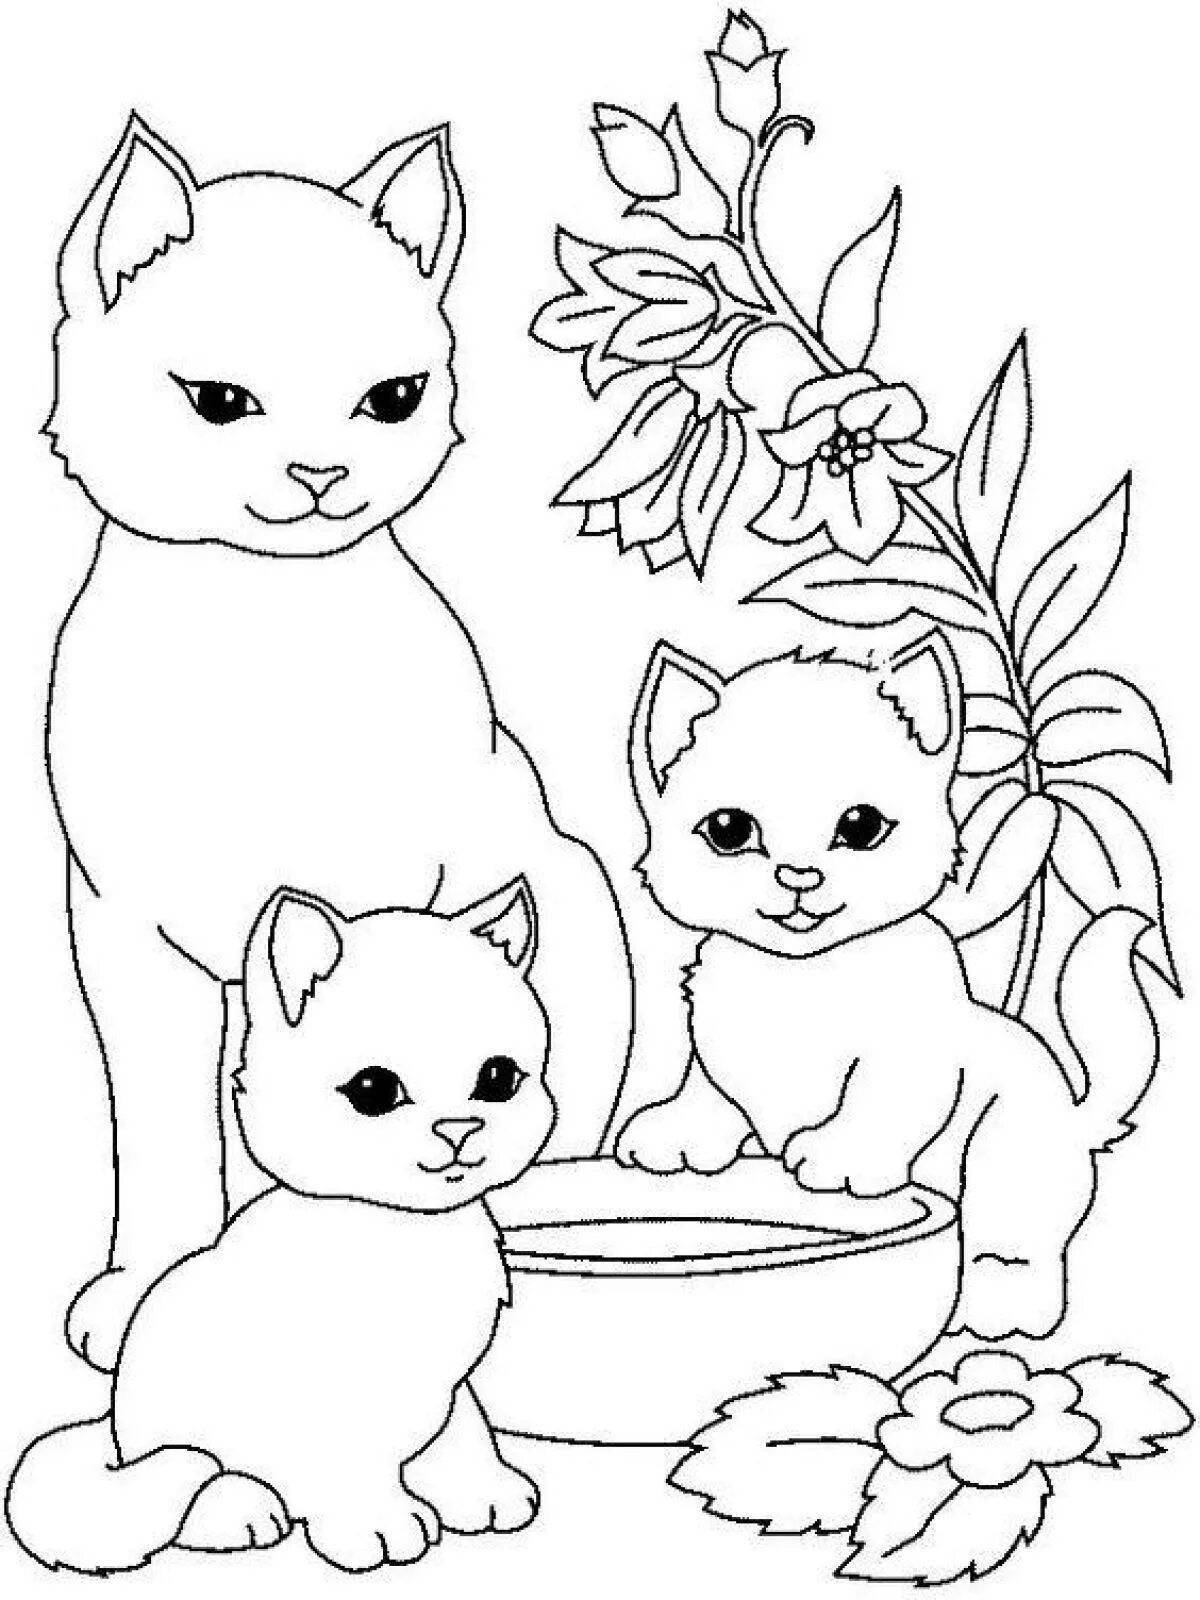 Прекрасная раскраска для детей 5-6 лет с кошками